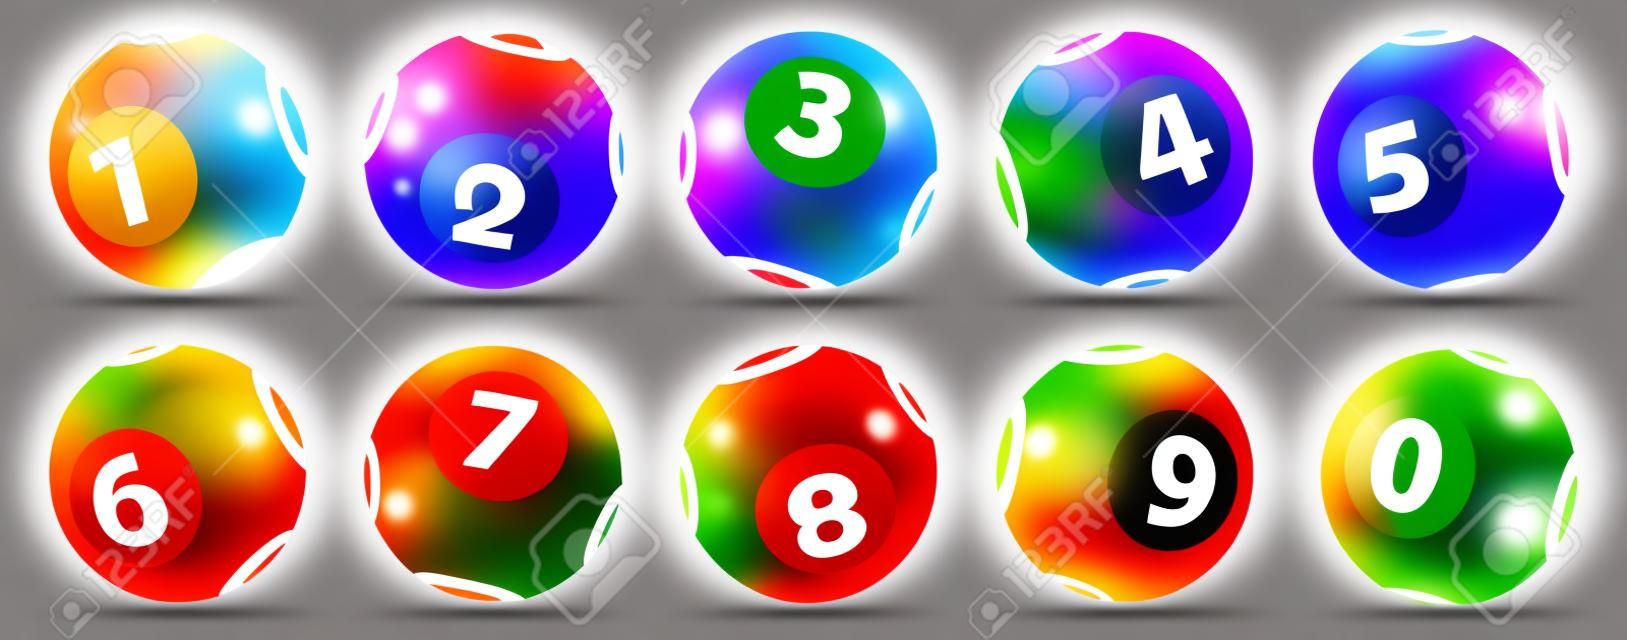 Liczba piłek do loterii. Kolorowe kulki izolowane. Piłka Bingo. Bingo piłki z numerami. Zestaw kolorowe kulki. Koncepcja Lotto. Zestawy piłek do gry w bingo.